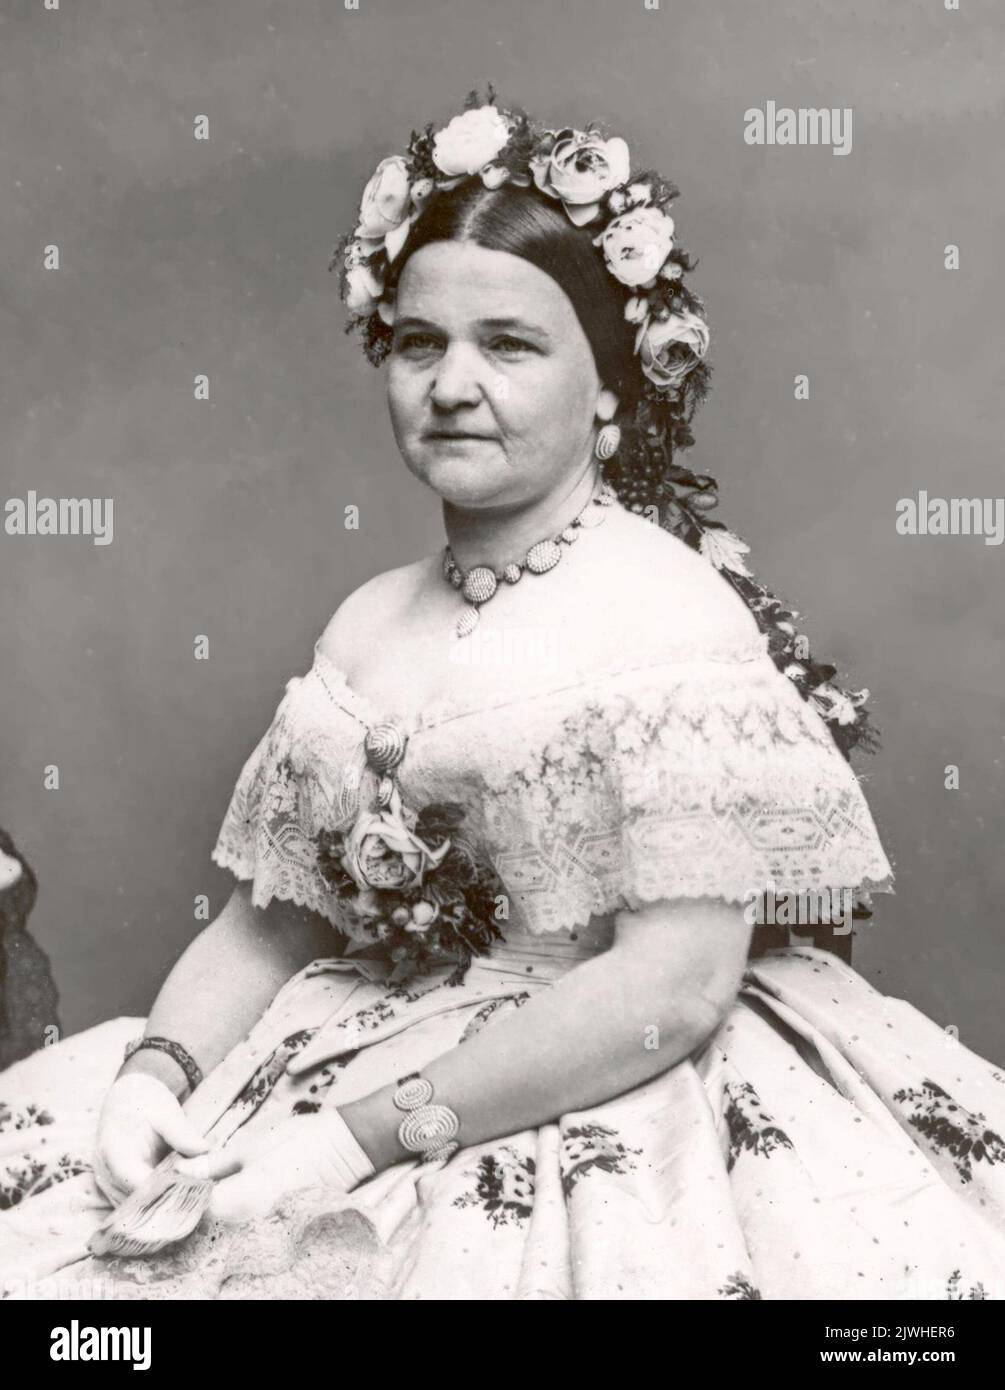 Mary Todd Lincoln, épouse d'Abraham Lincoln, en 1861, alors qu'elle avait 43 ans. Banque D'Images